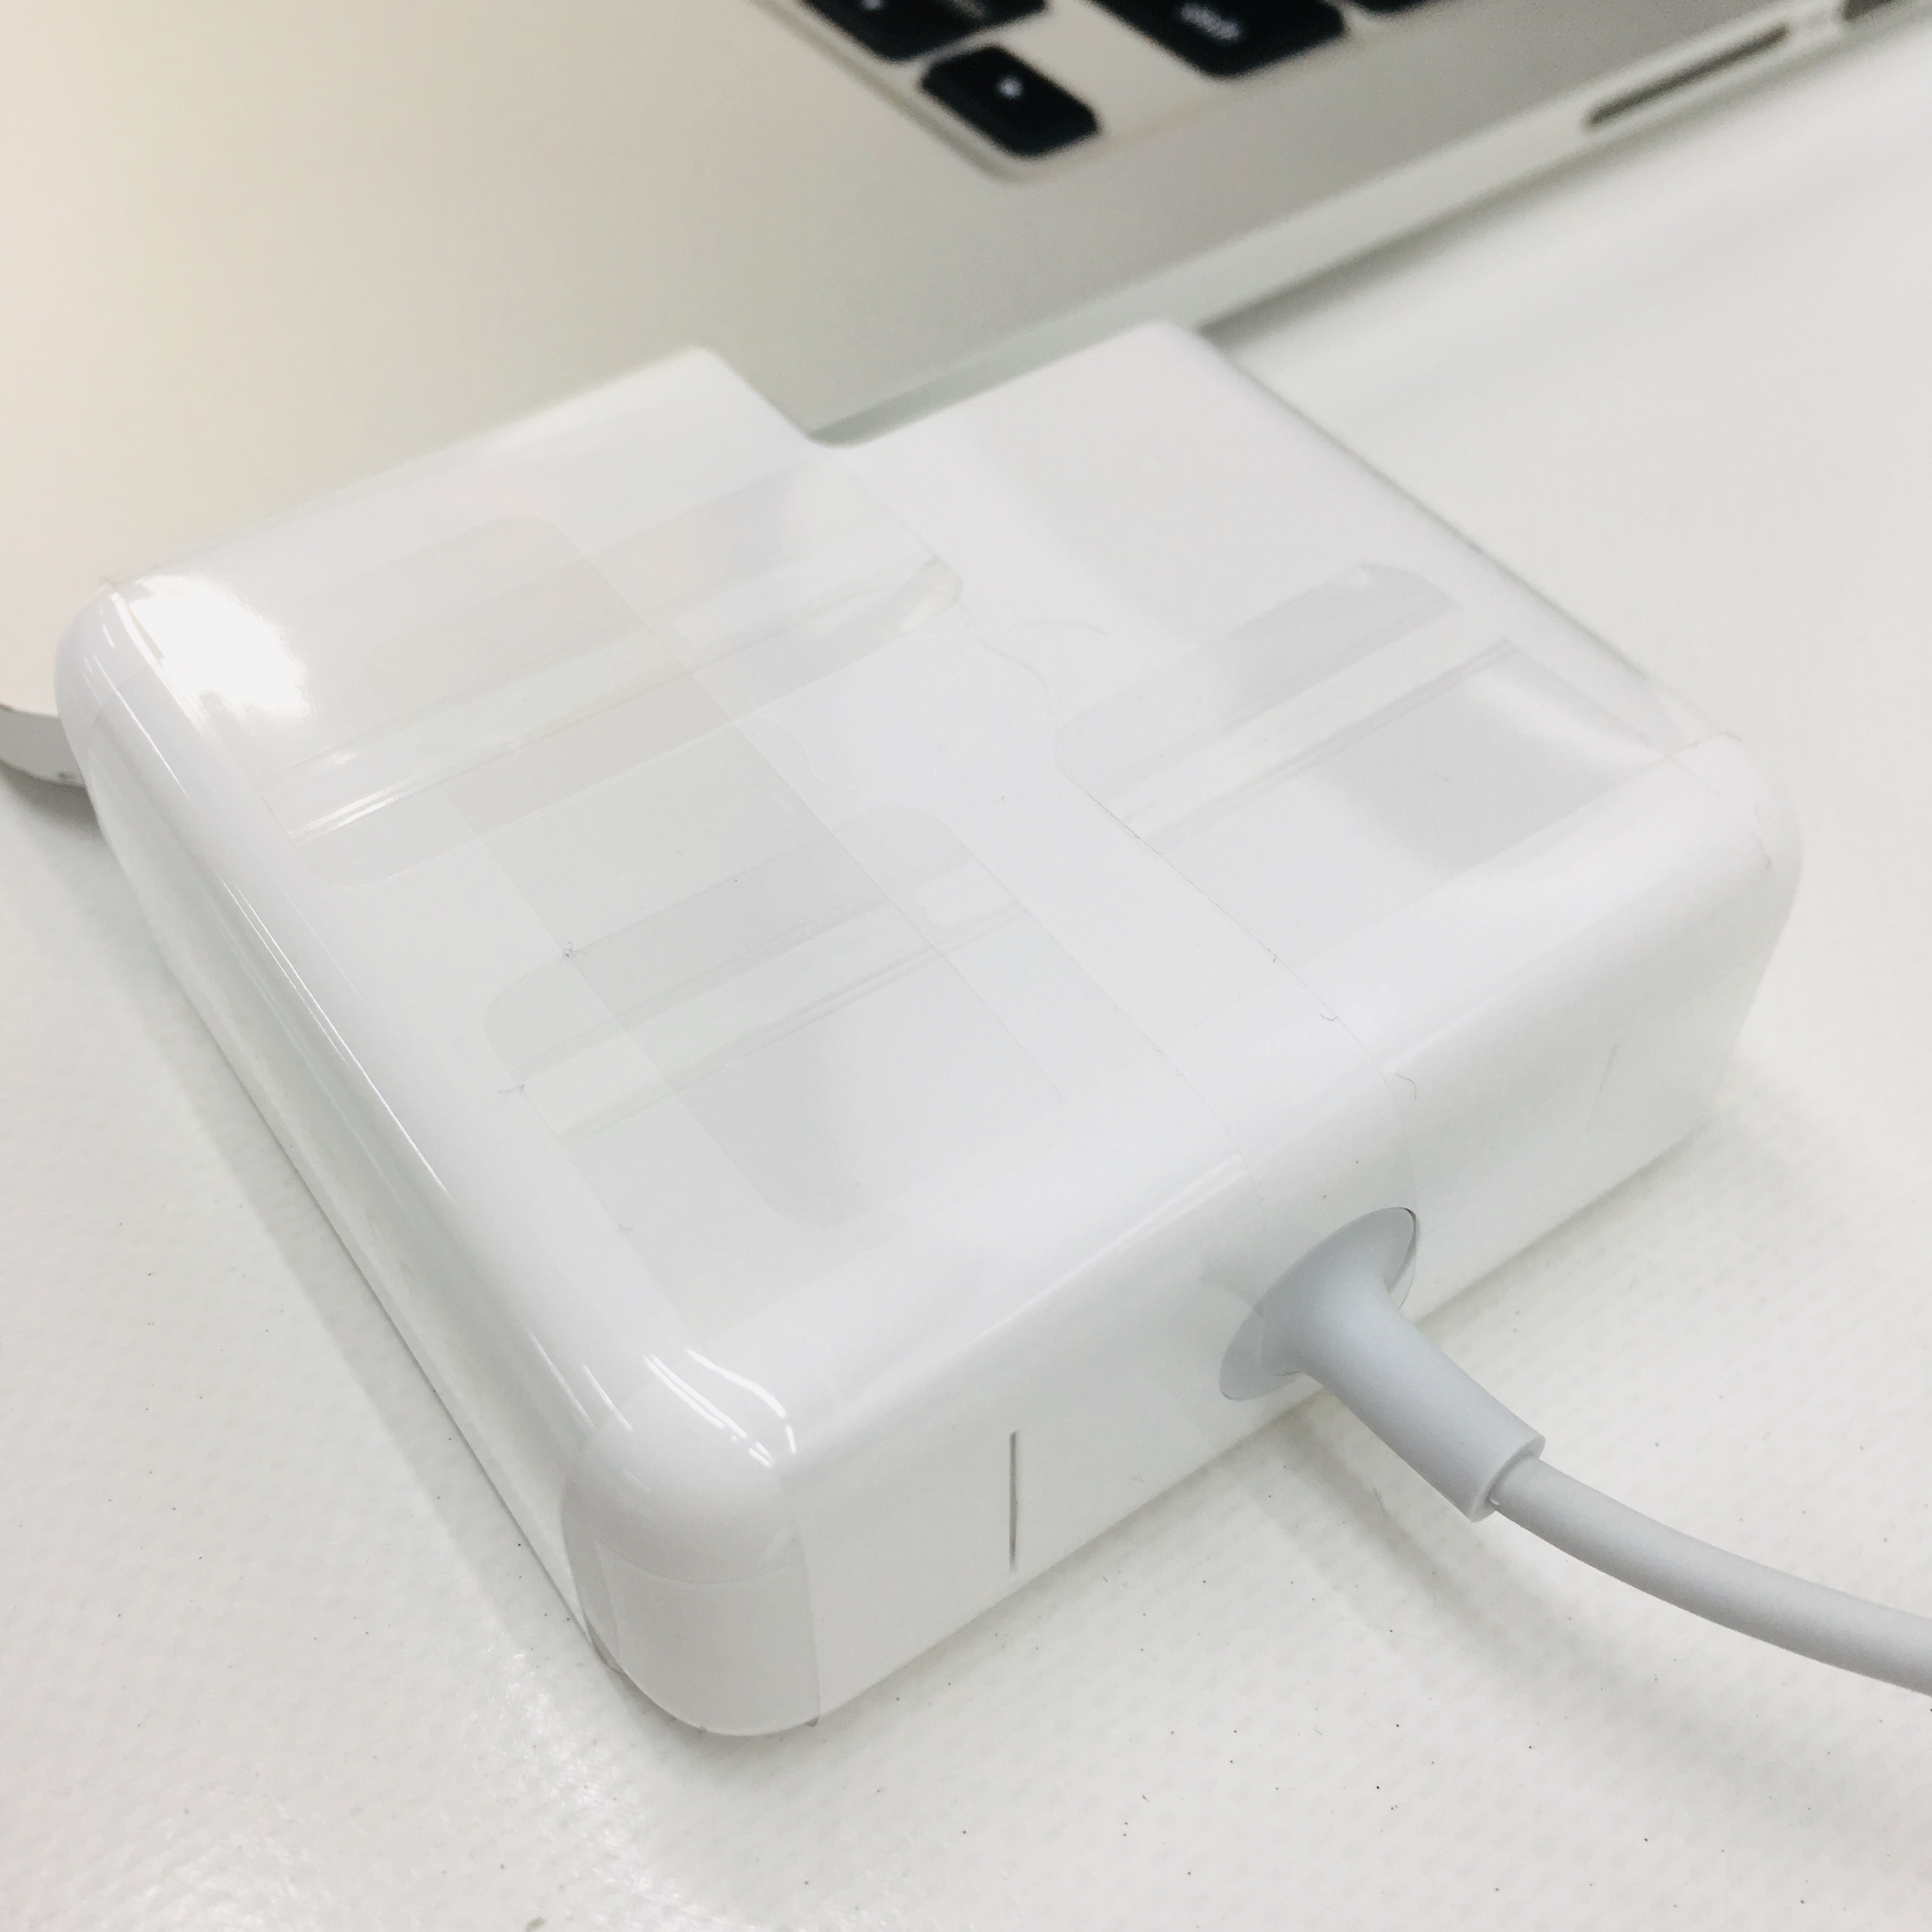 macbook pro 2015 charger best buy